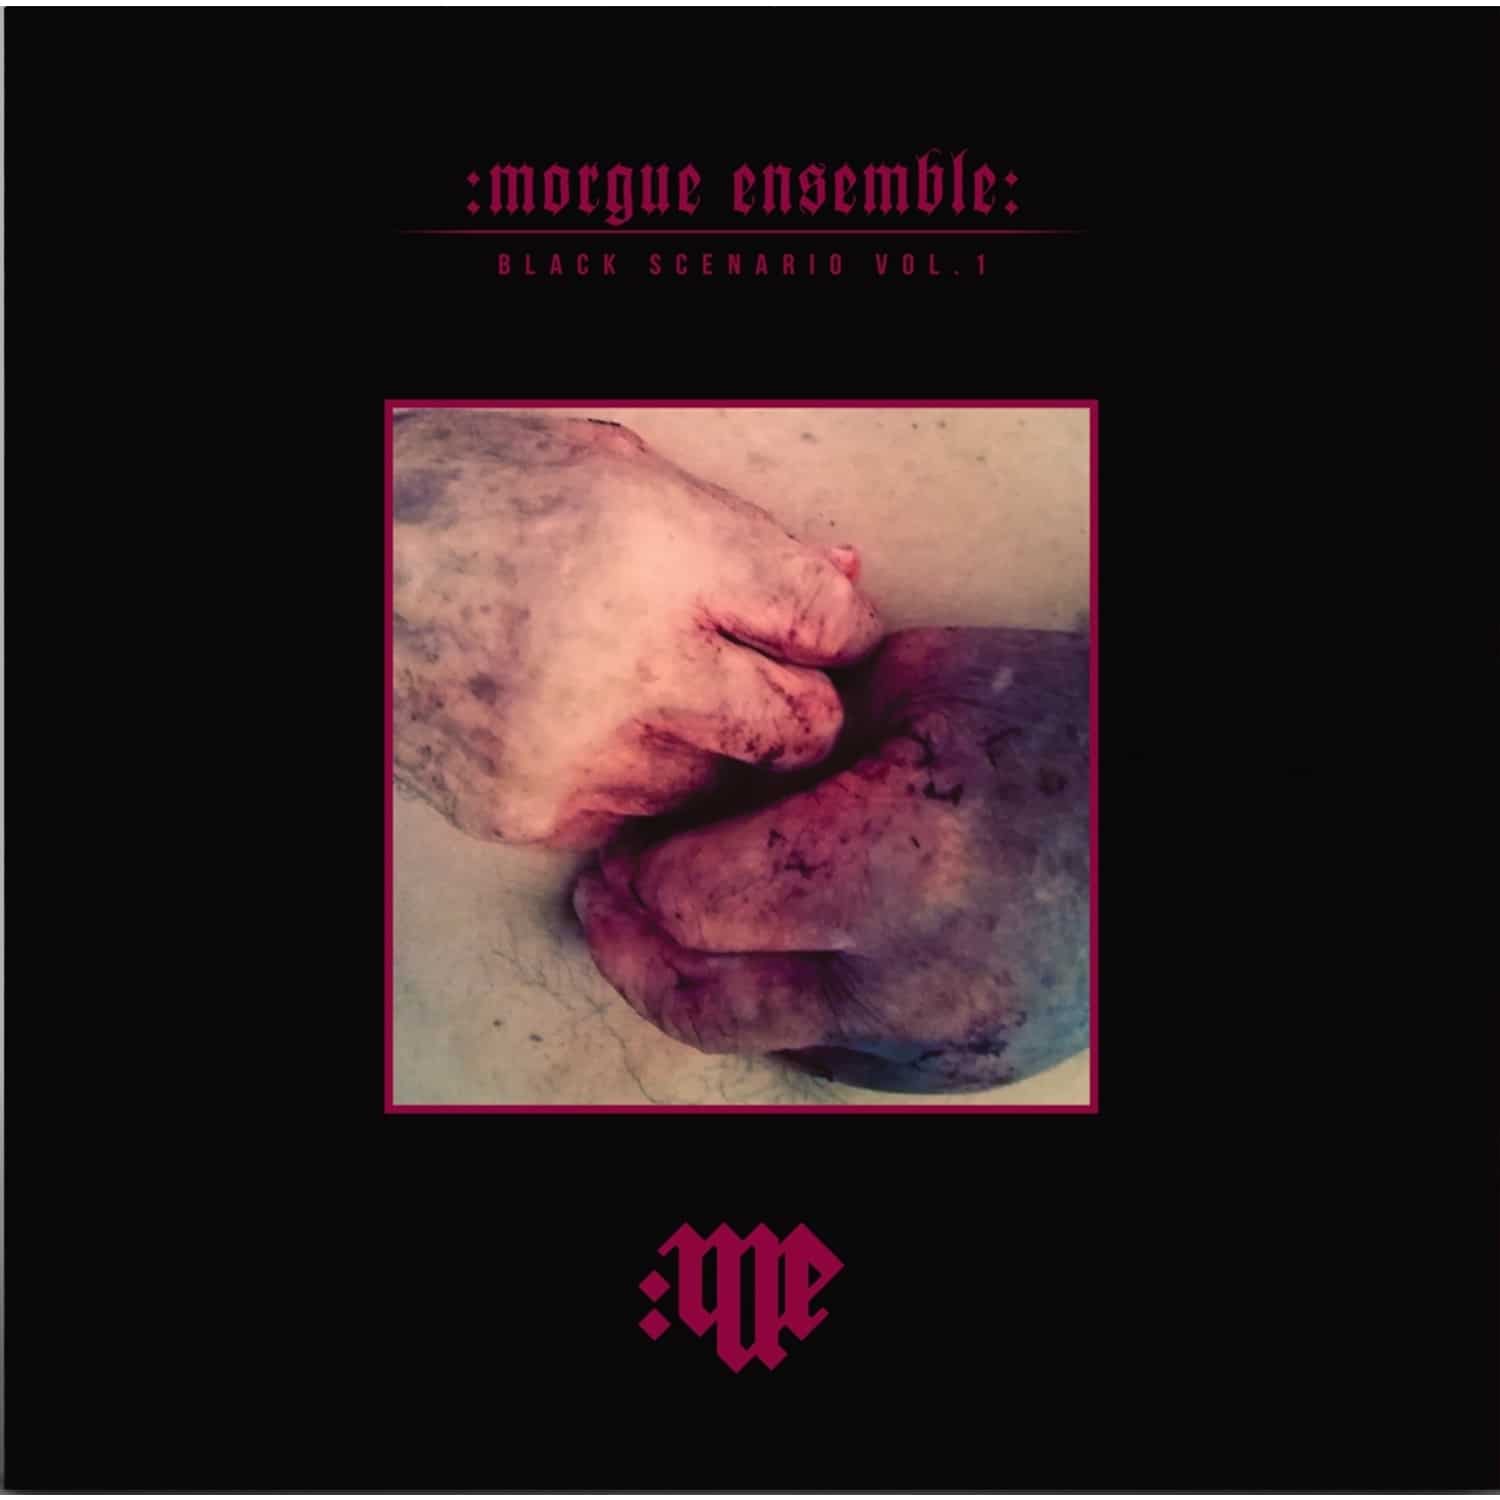 Morgue Ensemble - BLACK SCENARIO VOL.1 